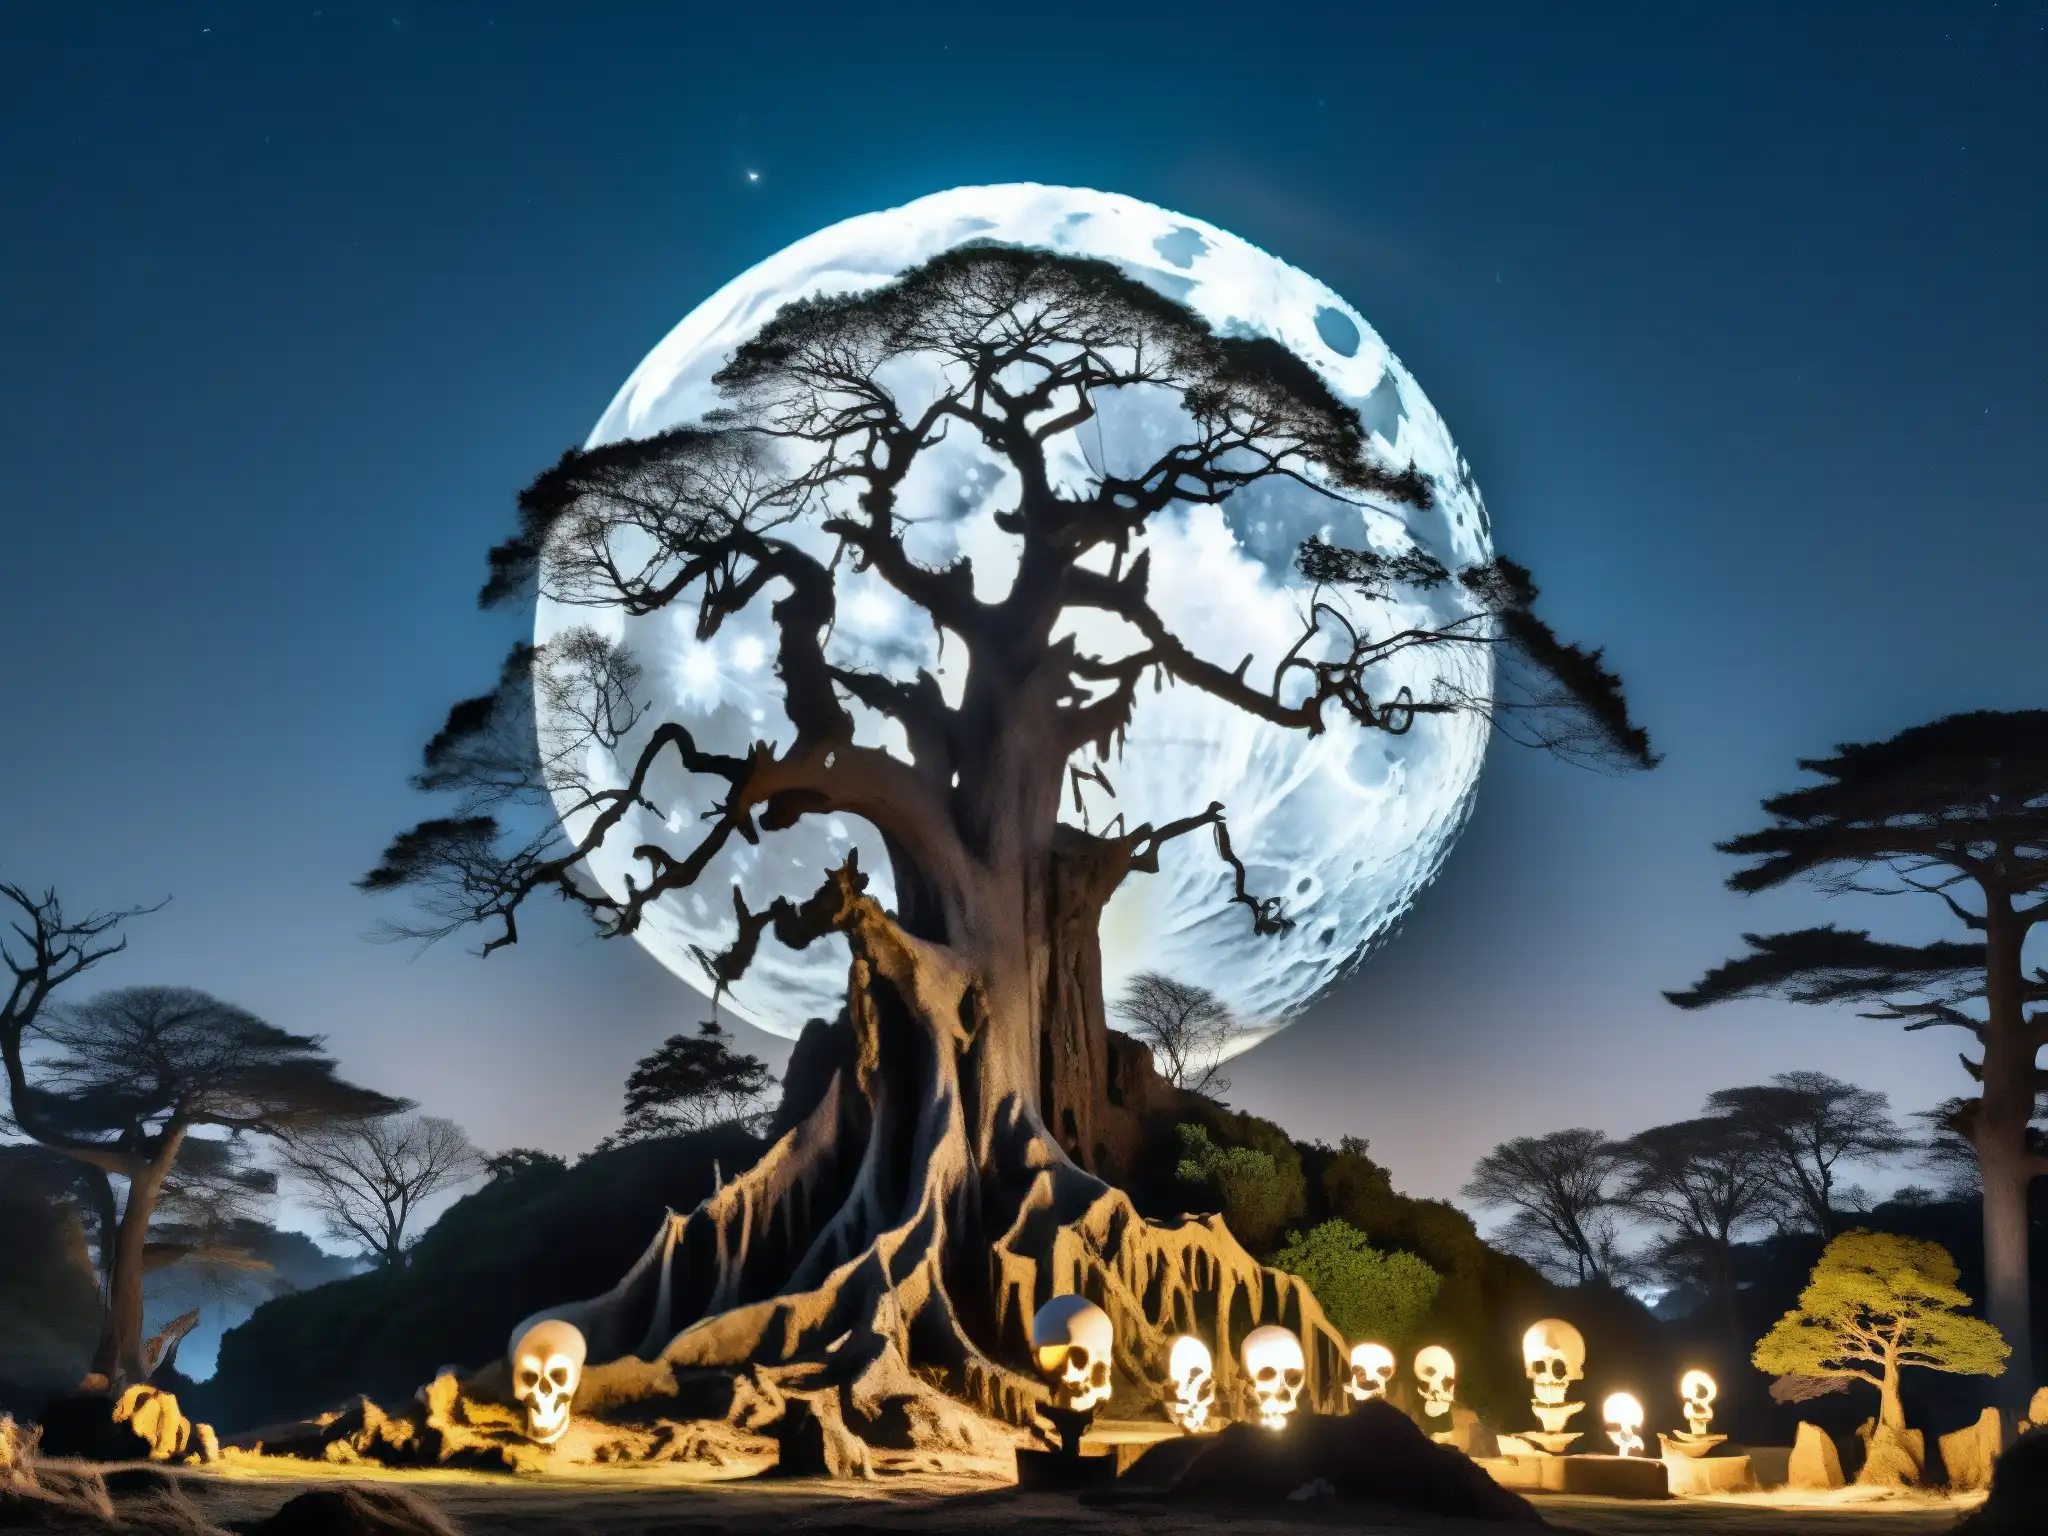 Un bosque nocturno iluminado por la luna, donde un Gashadokuro gigante de hueso blanco proyecta una presencia misteriosa y aterradora